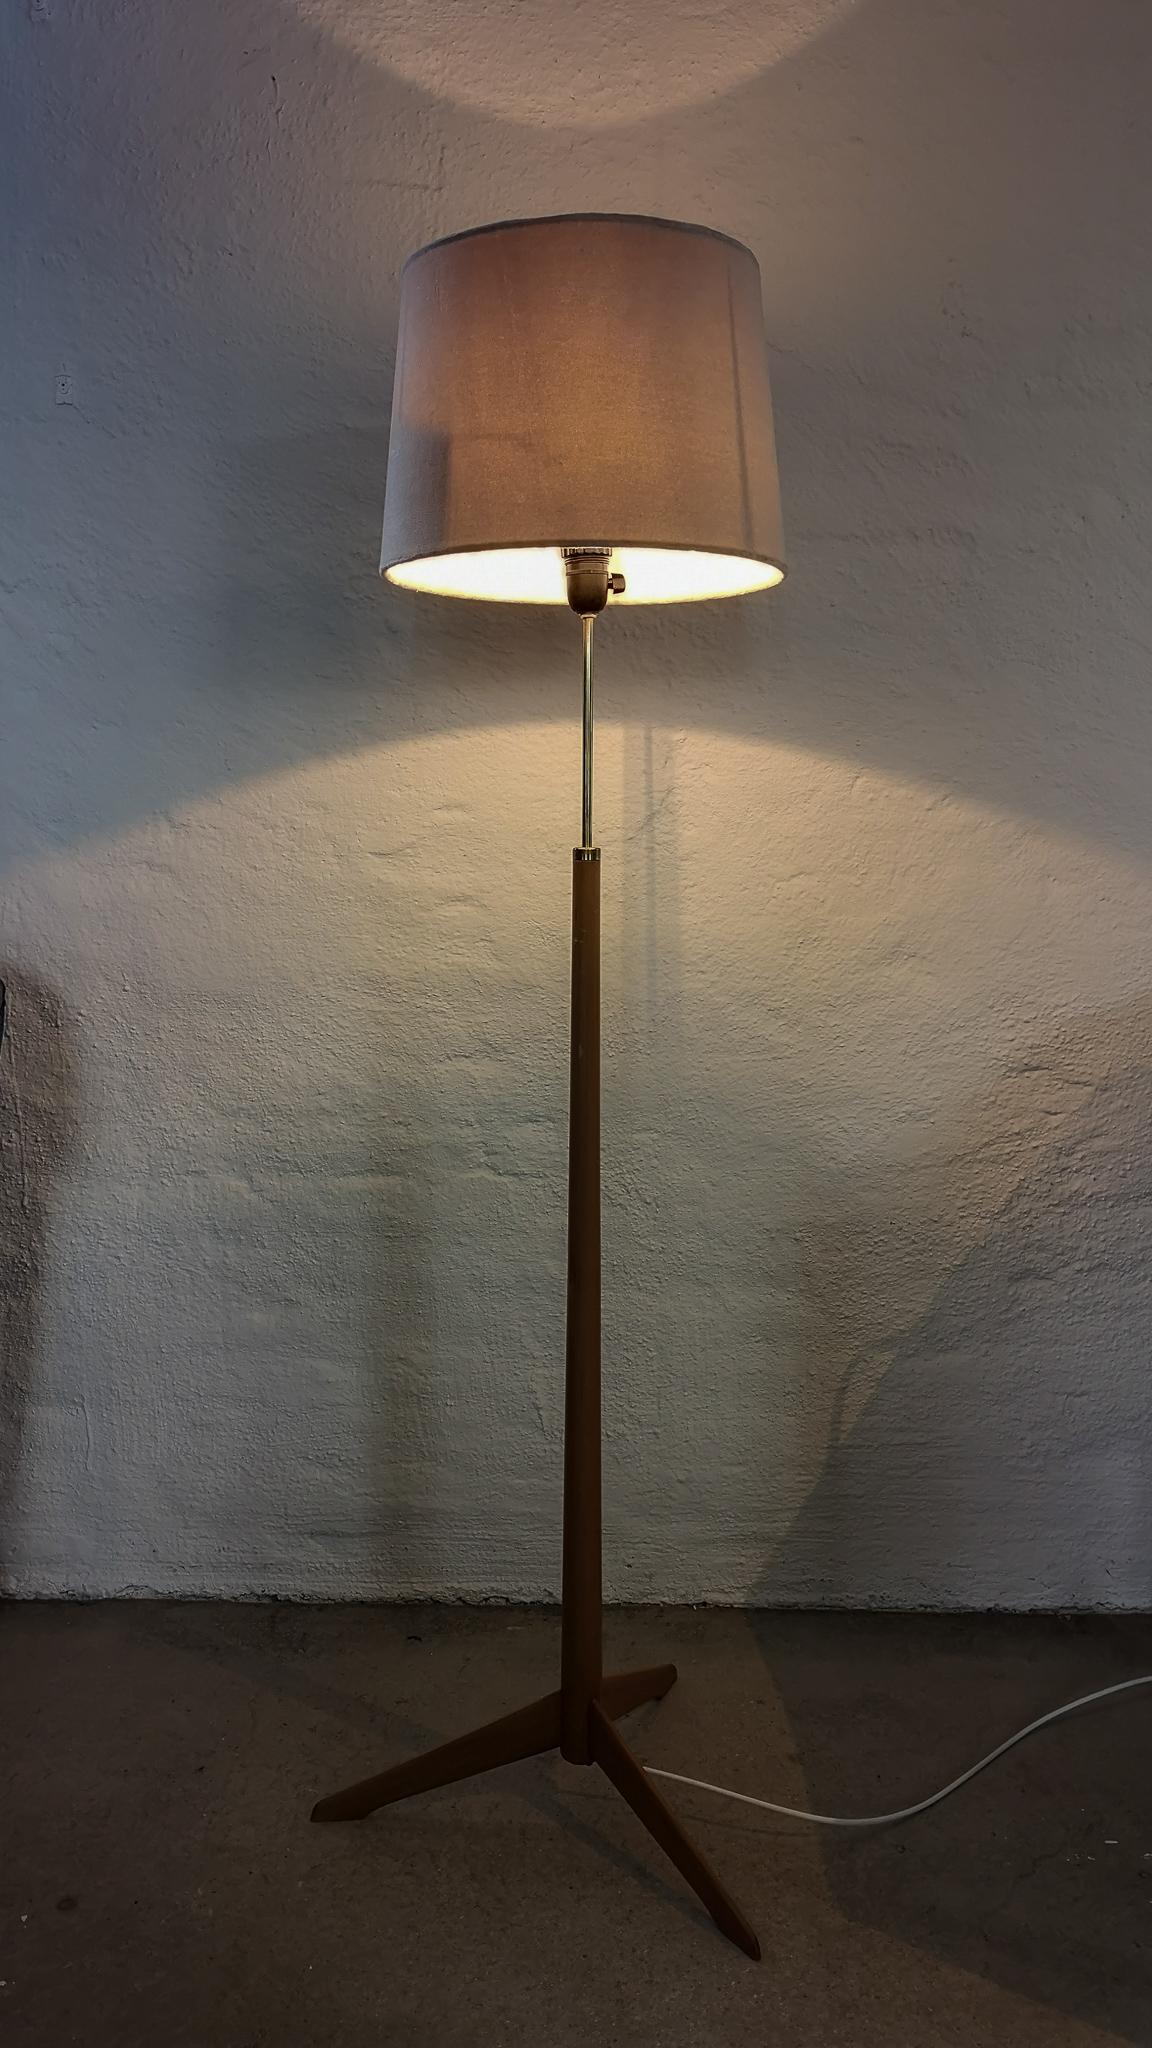 Ce lampadaire a été fabriqué par Bergboms Suède dans les années 1960. Son bois de bouleau se marie parfaitement avec la partie en laiton de la lampe.

Bon état de fonctionnement recâblé quelques marques sur le haut des parties boisées. La teinte